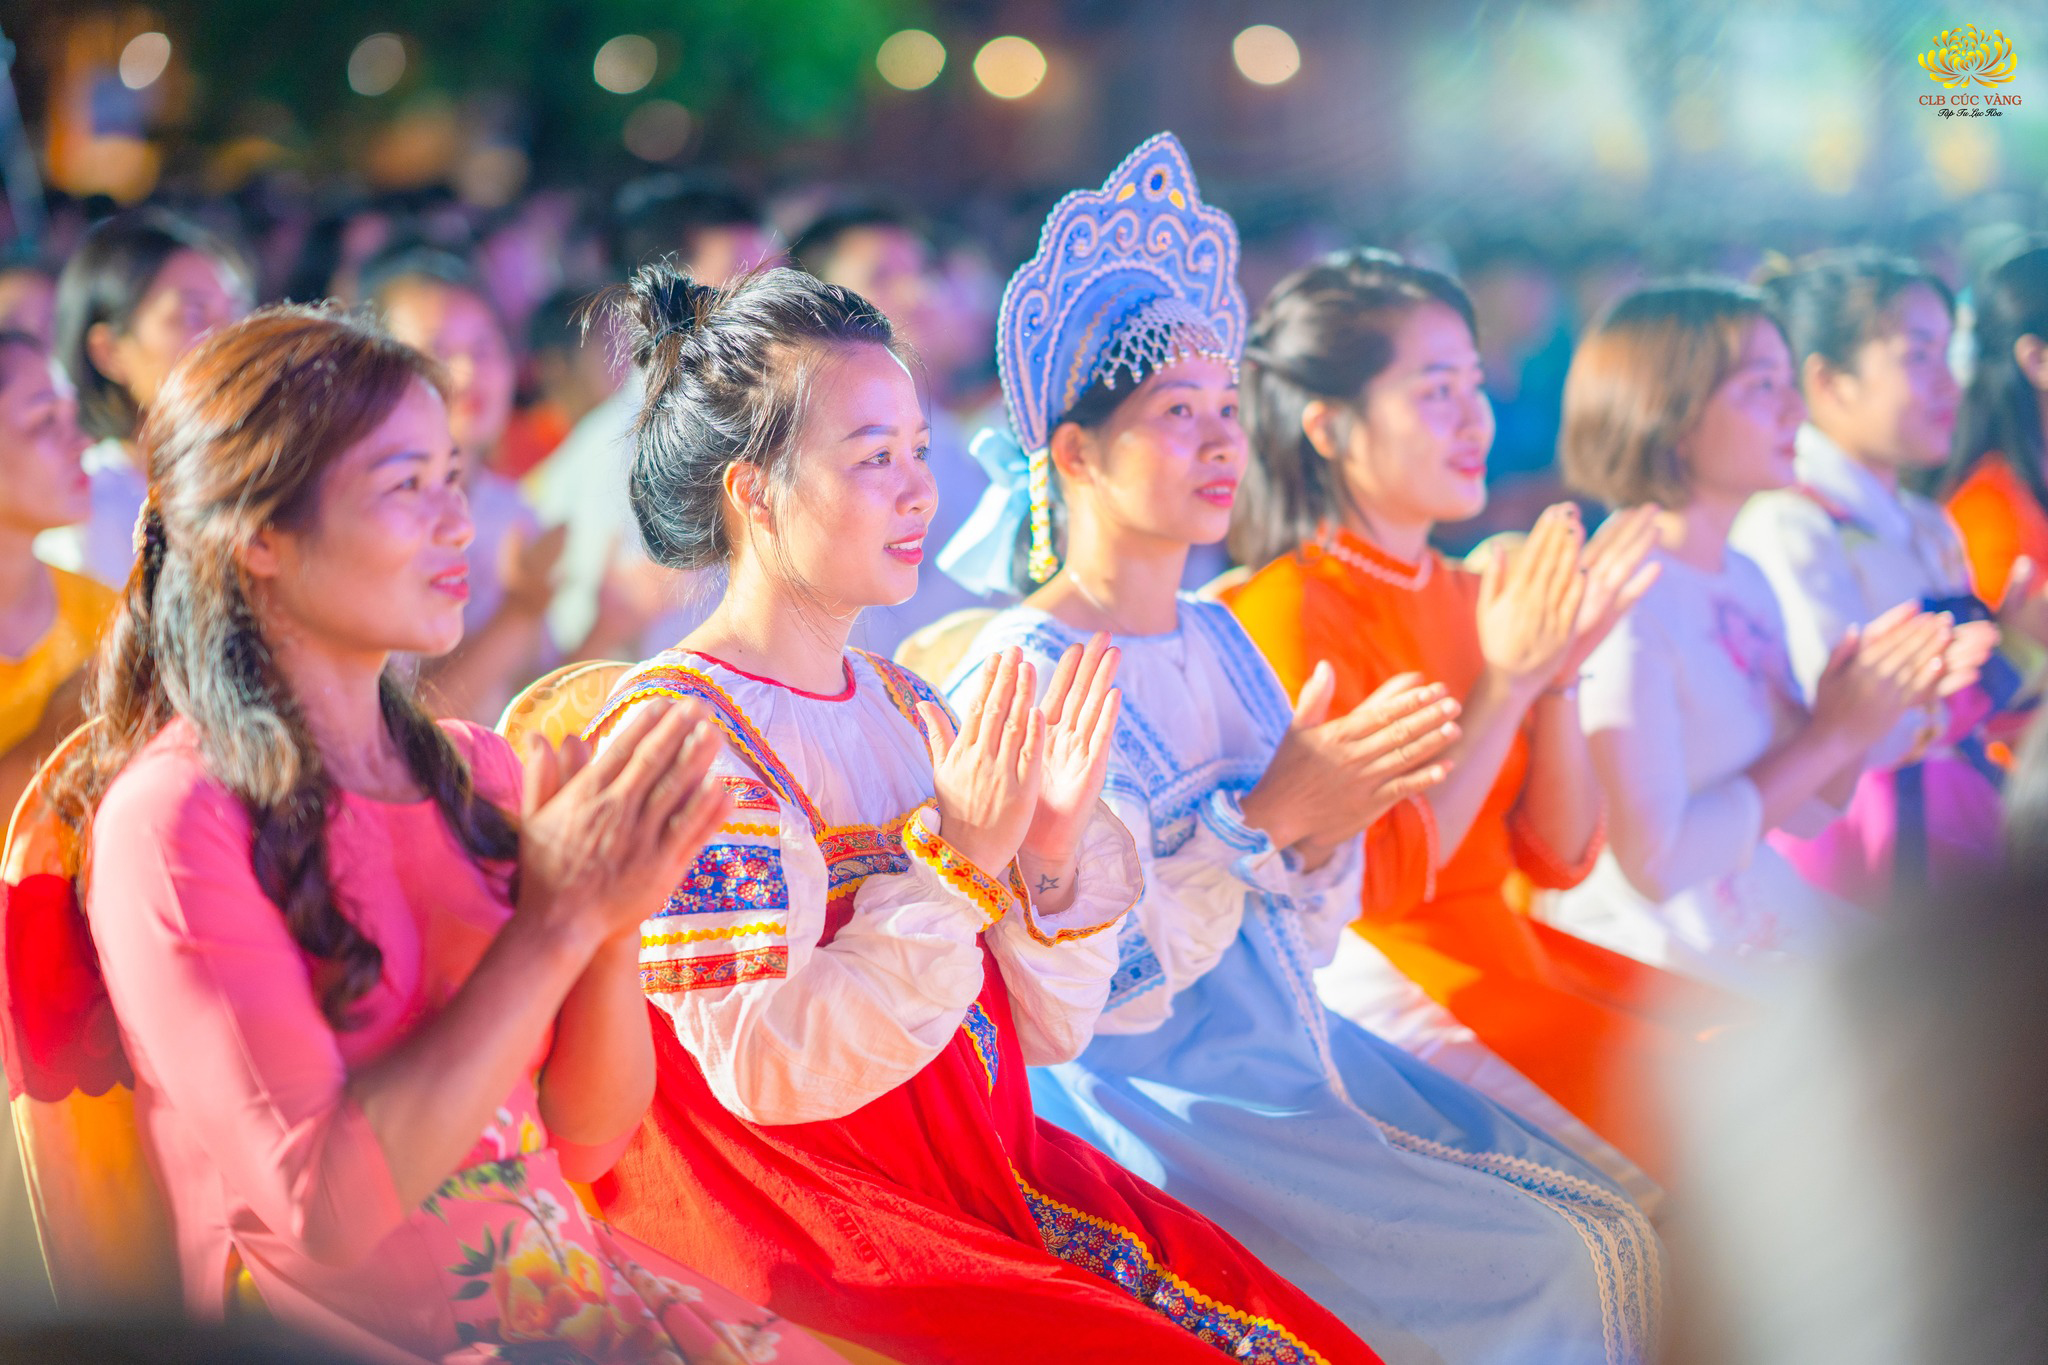 Phật tử xa xứ trong trang phục truyền thống của các quốc gia trên thế giới hoan hỷ tham dự chương trình.